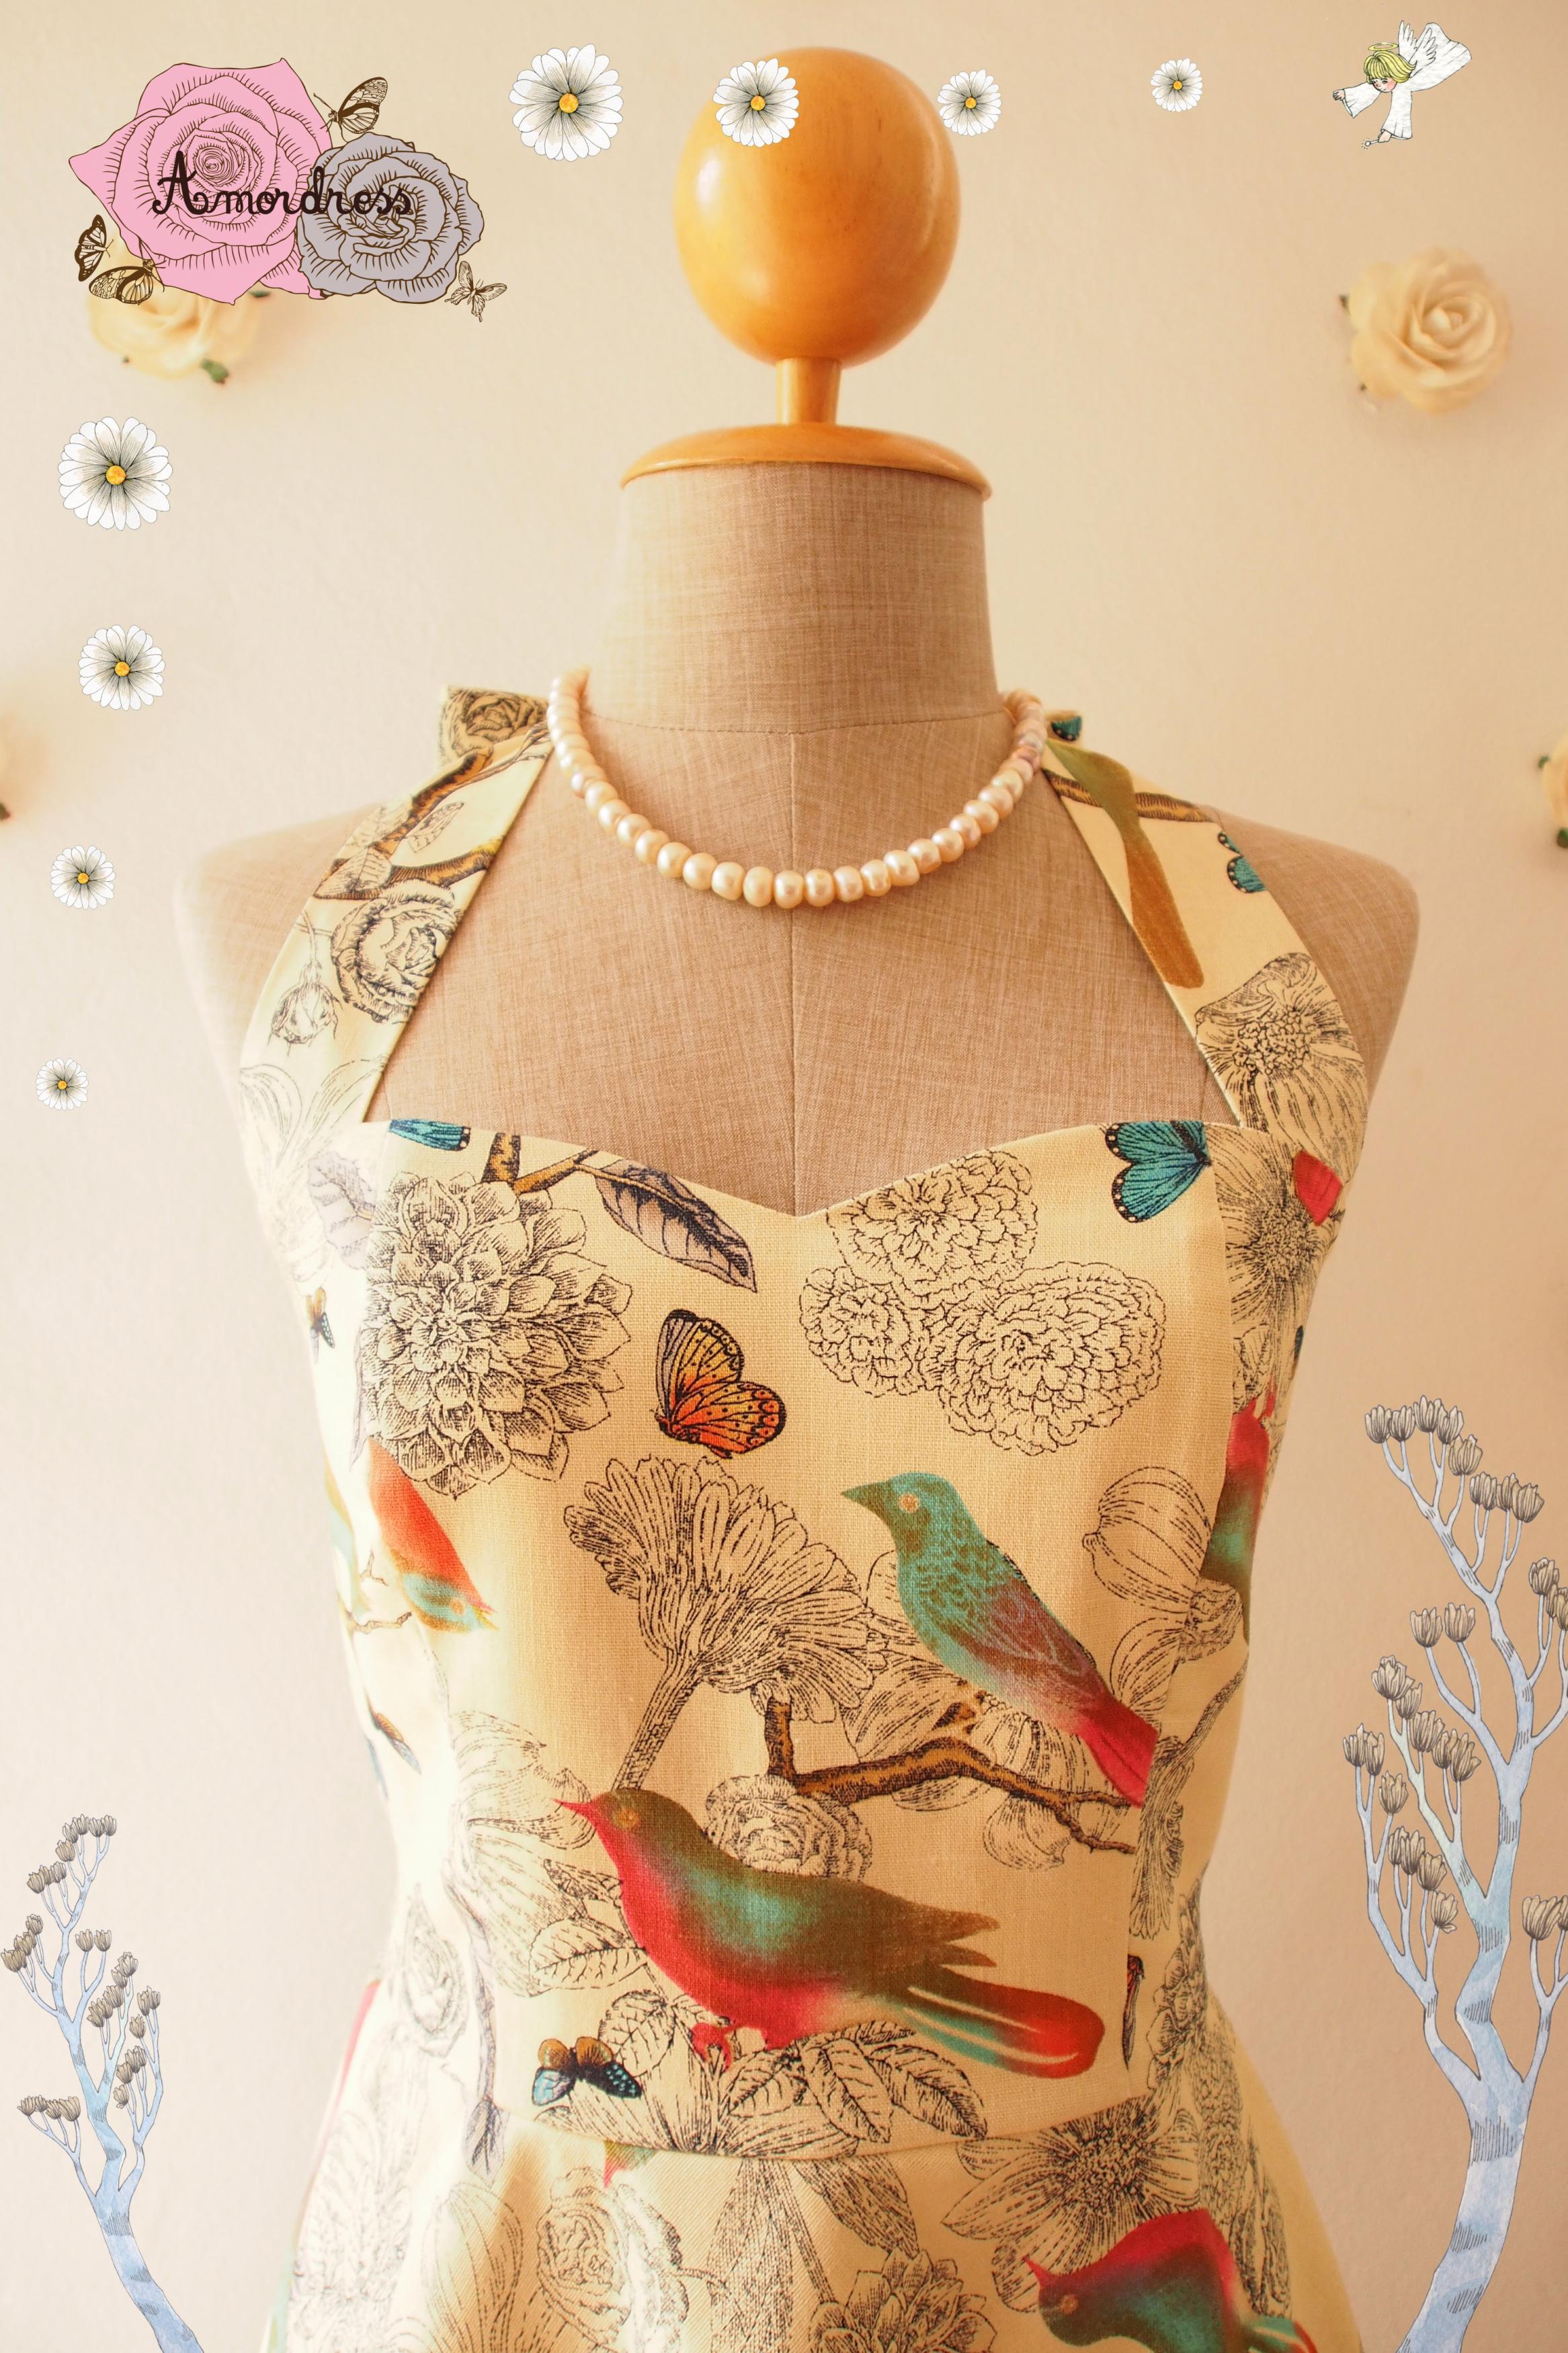 floral tea party dress